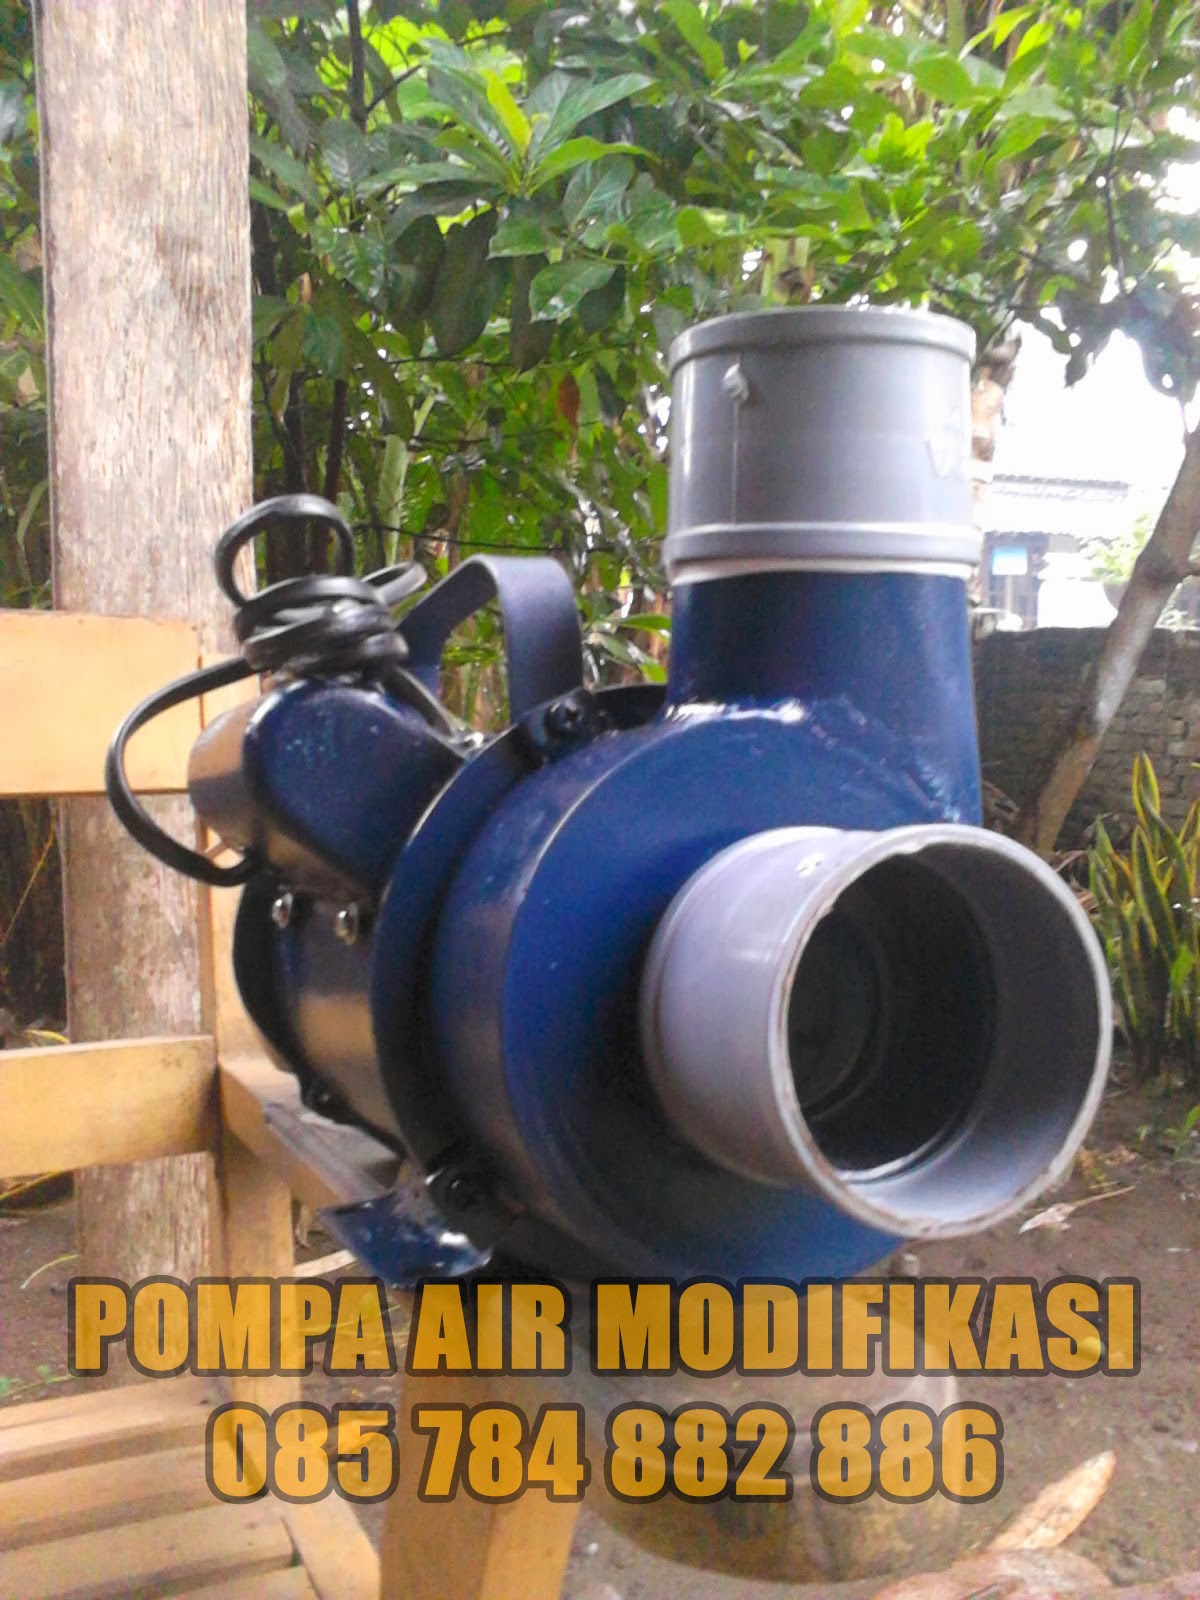 Jual POMPA AIR Modifikasi Murah Pompa Air Obohan Pompa AIR